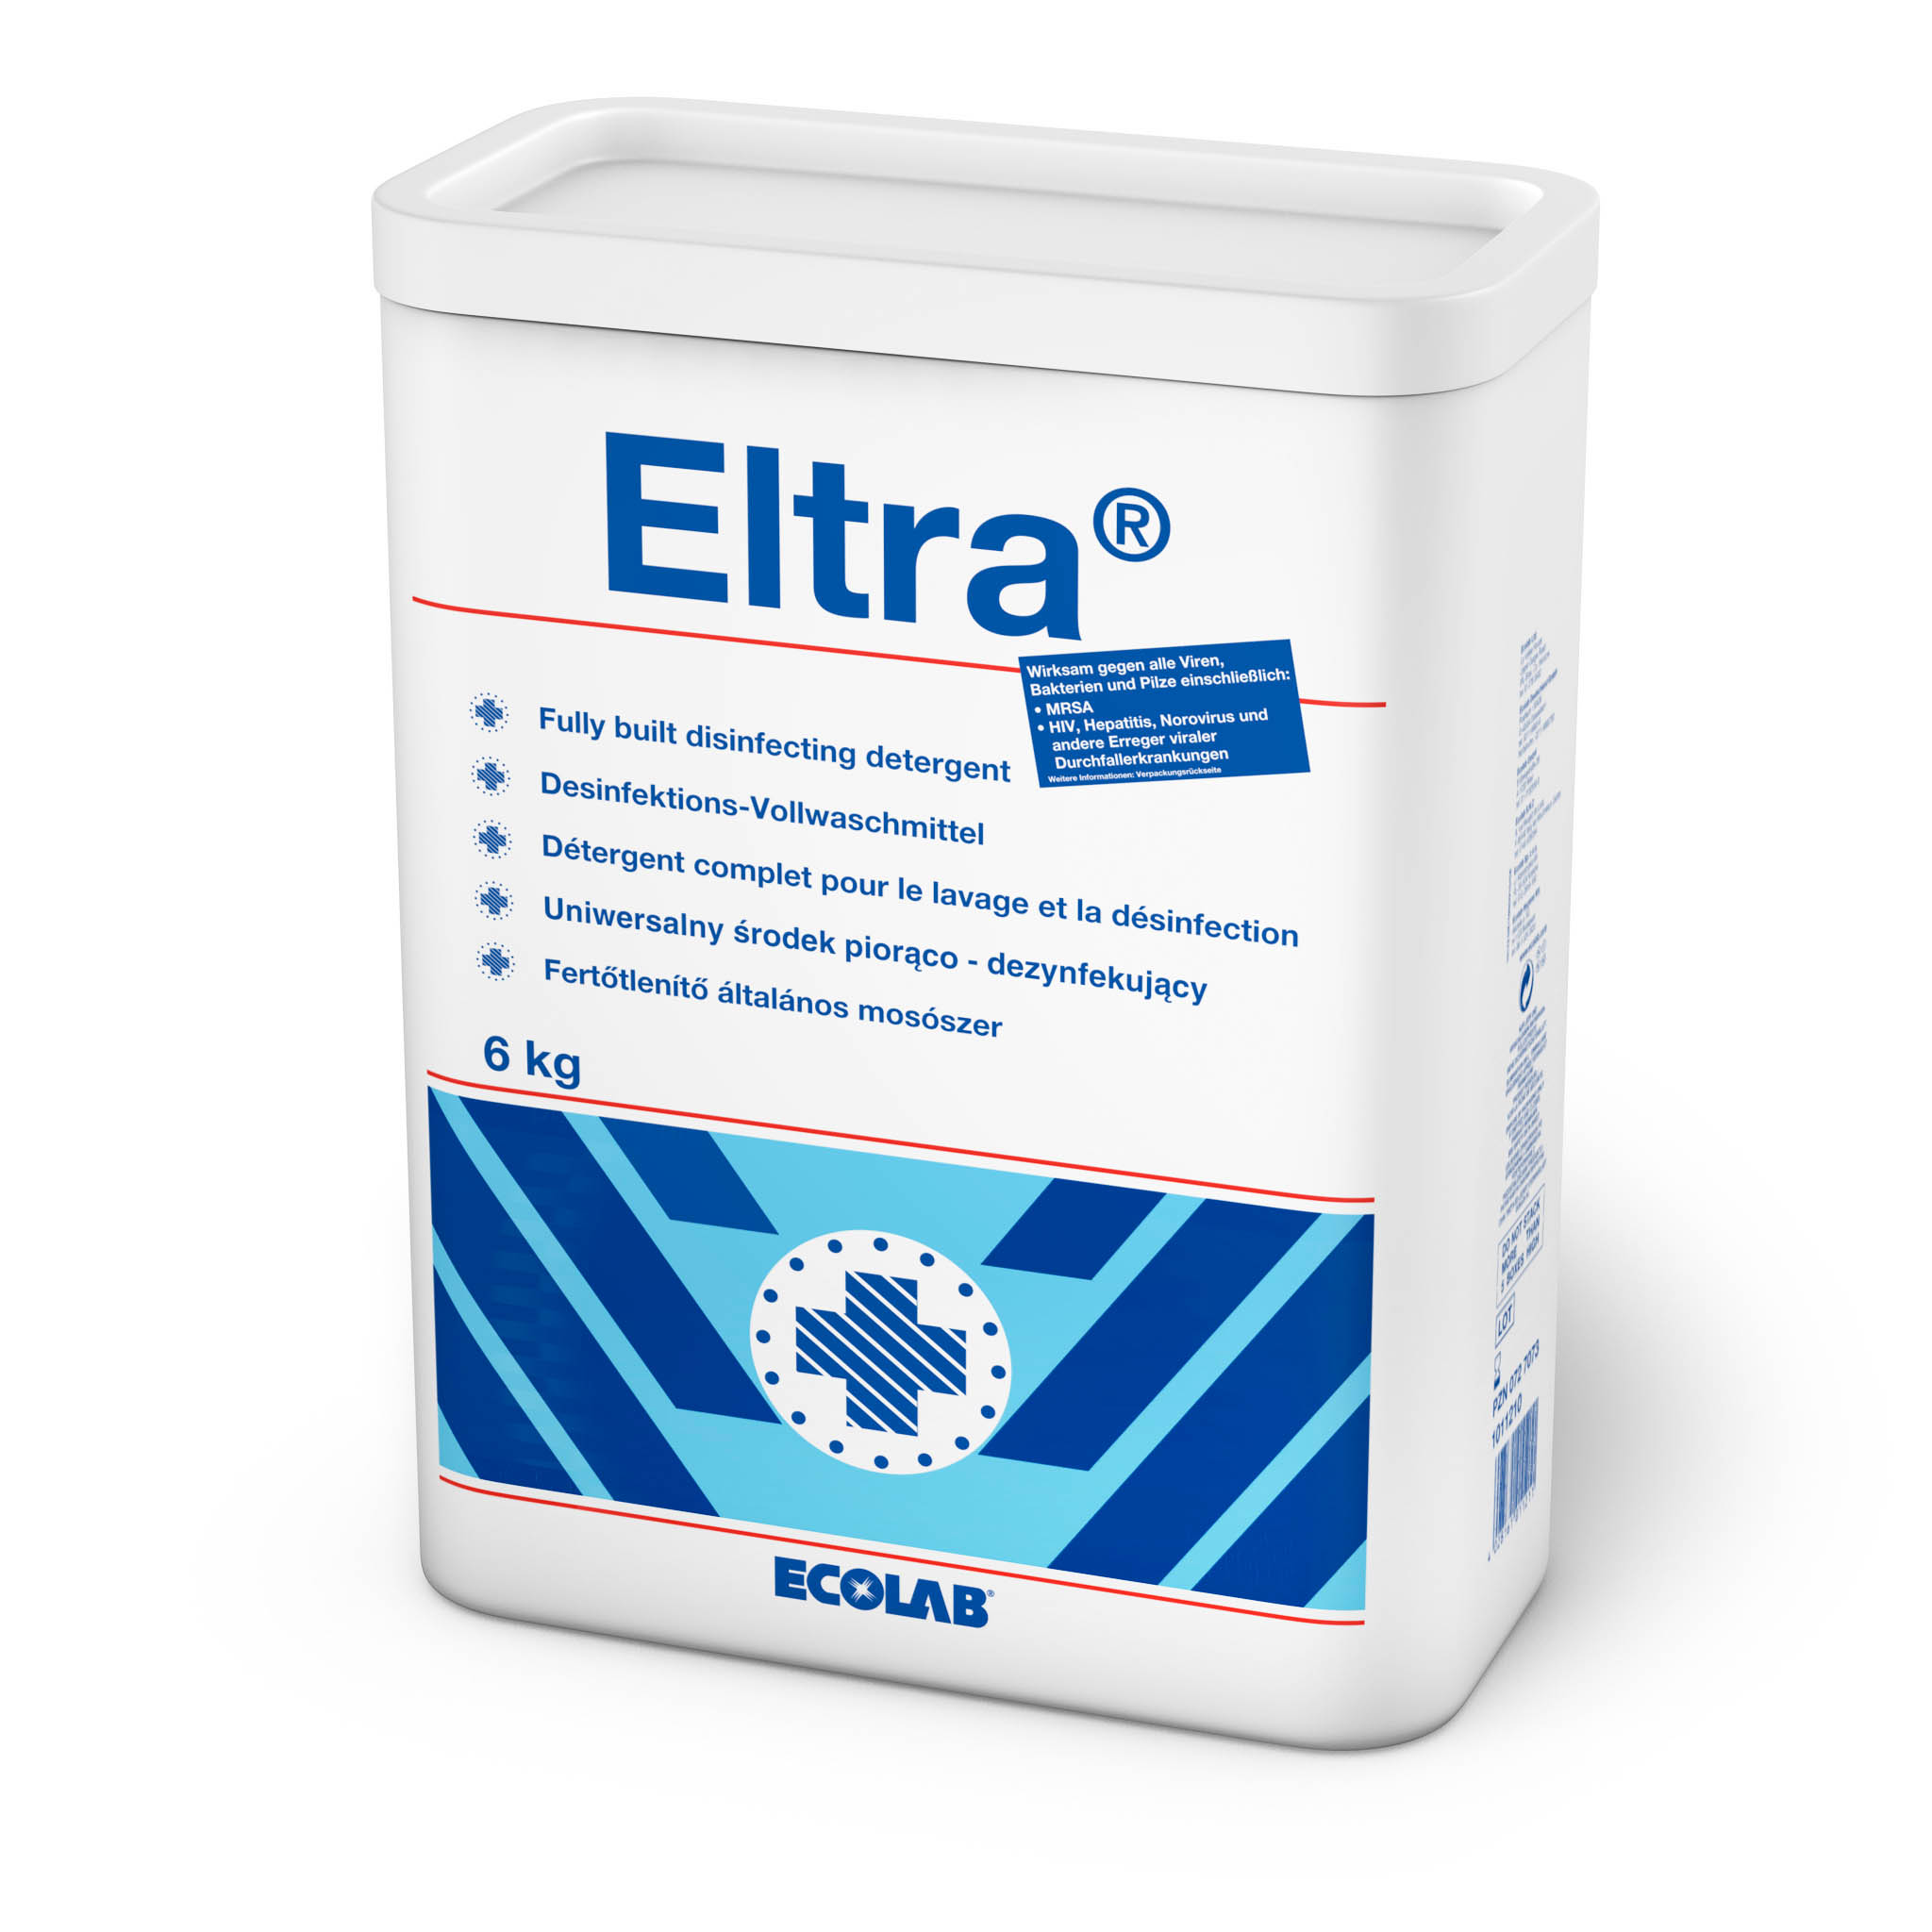 Eltra / 6 KG / Desinfektionswaschmittel / VAH und RKI gelistet